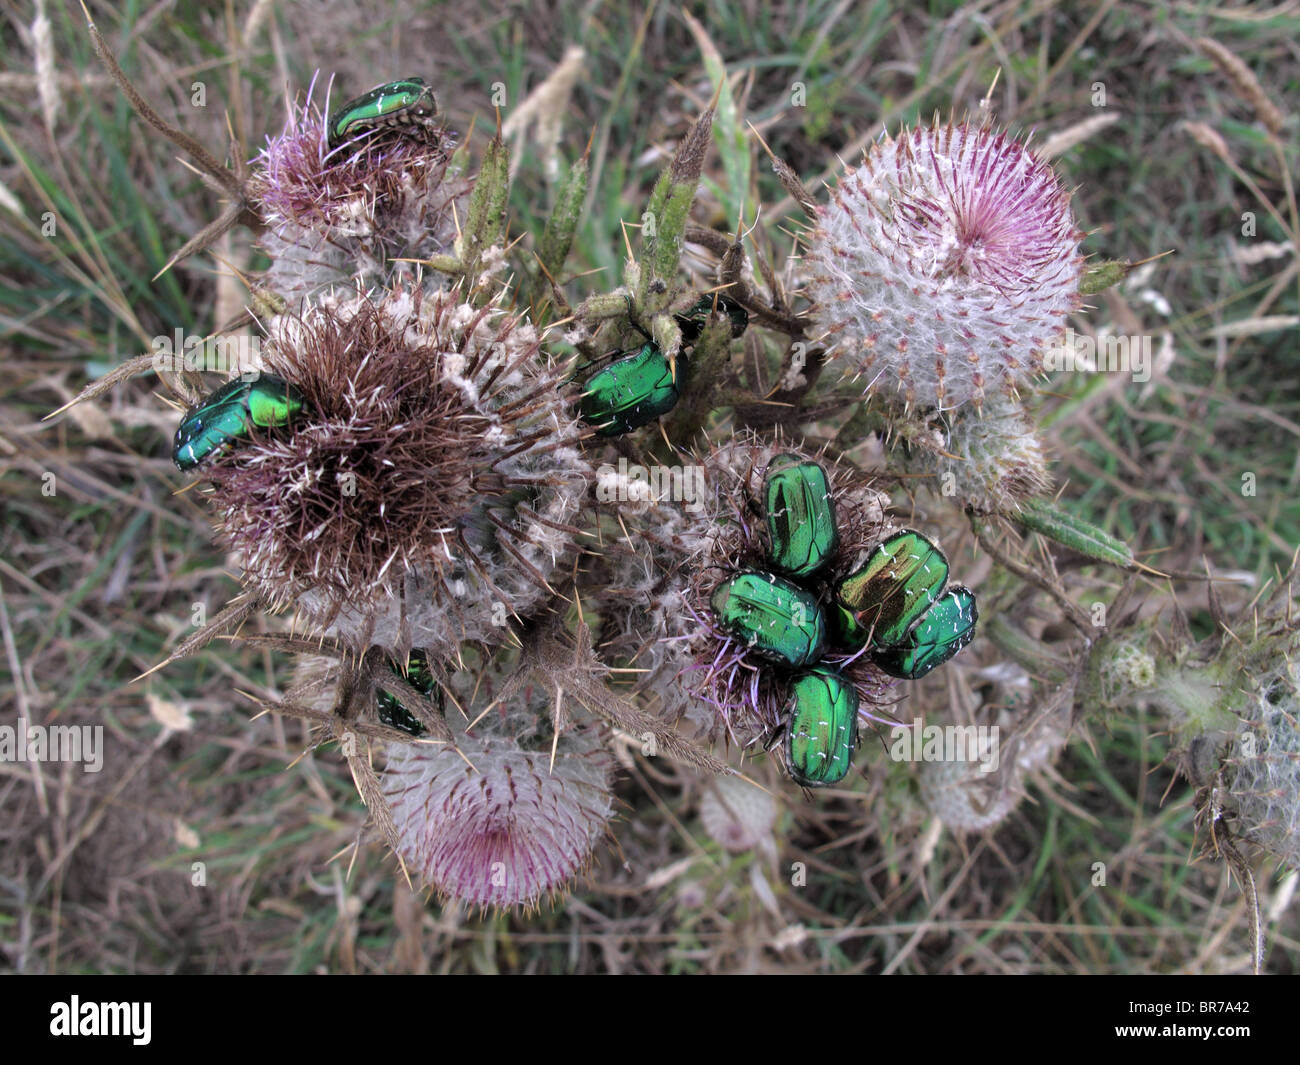 Rose Chafer beetles (Cetonia aurata) Stock Photo